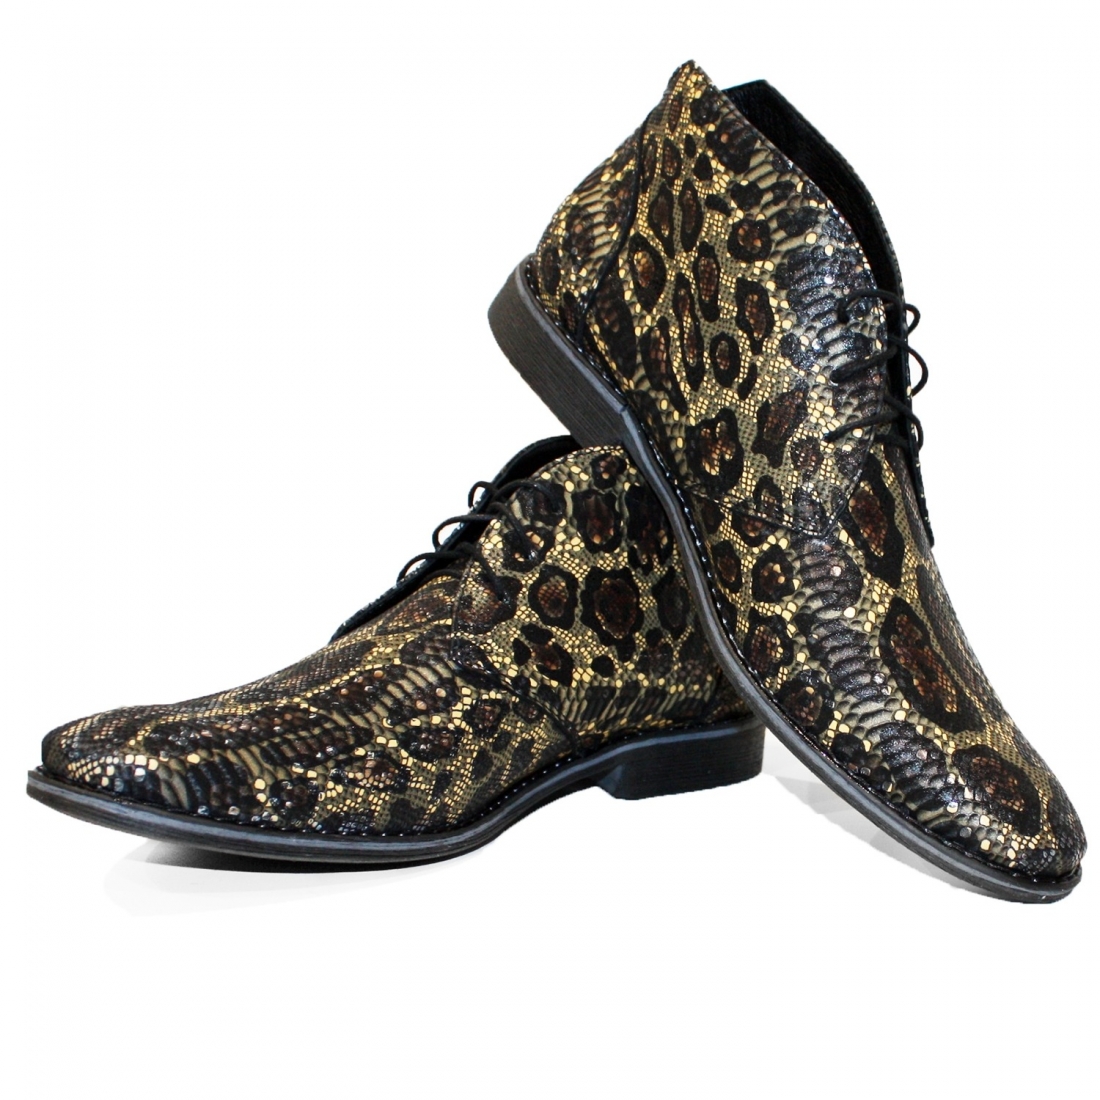 Modello Tarroka - Chukka Boots - Handmade Colorful Italian Leather Shoes